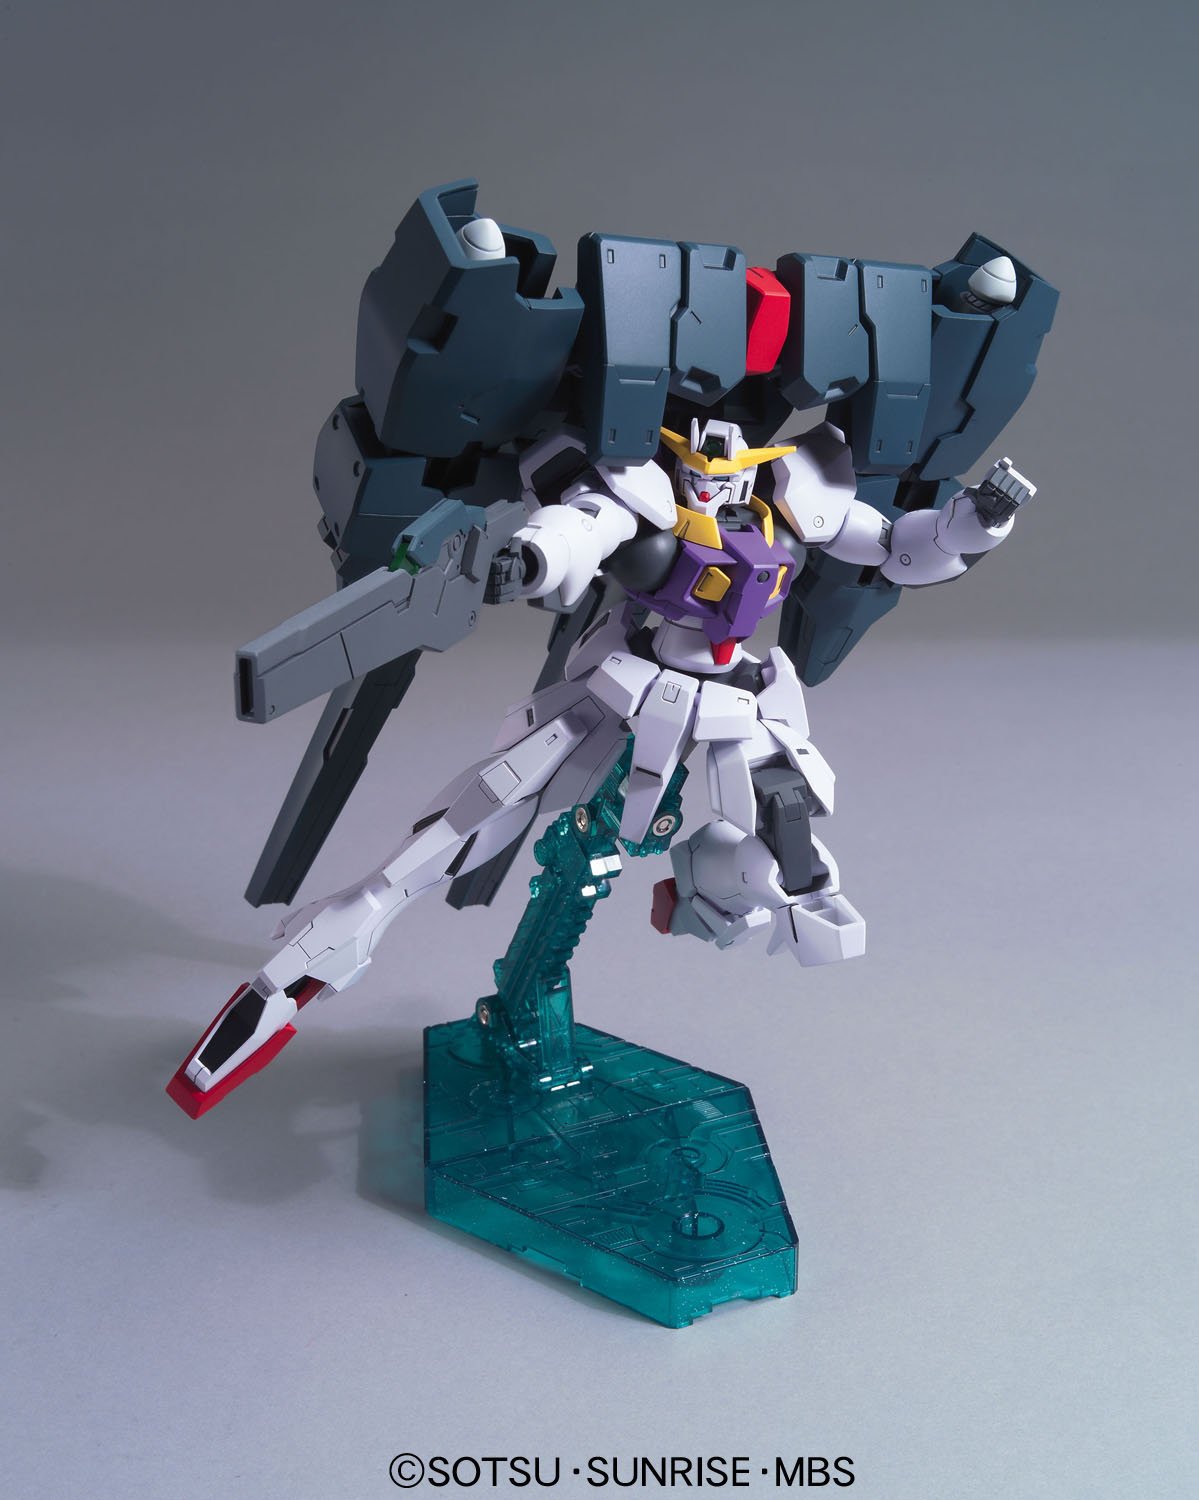 HG00 - CB-002 Raphael Gundam